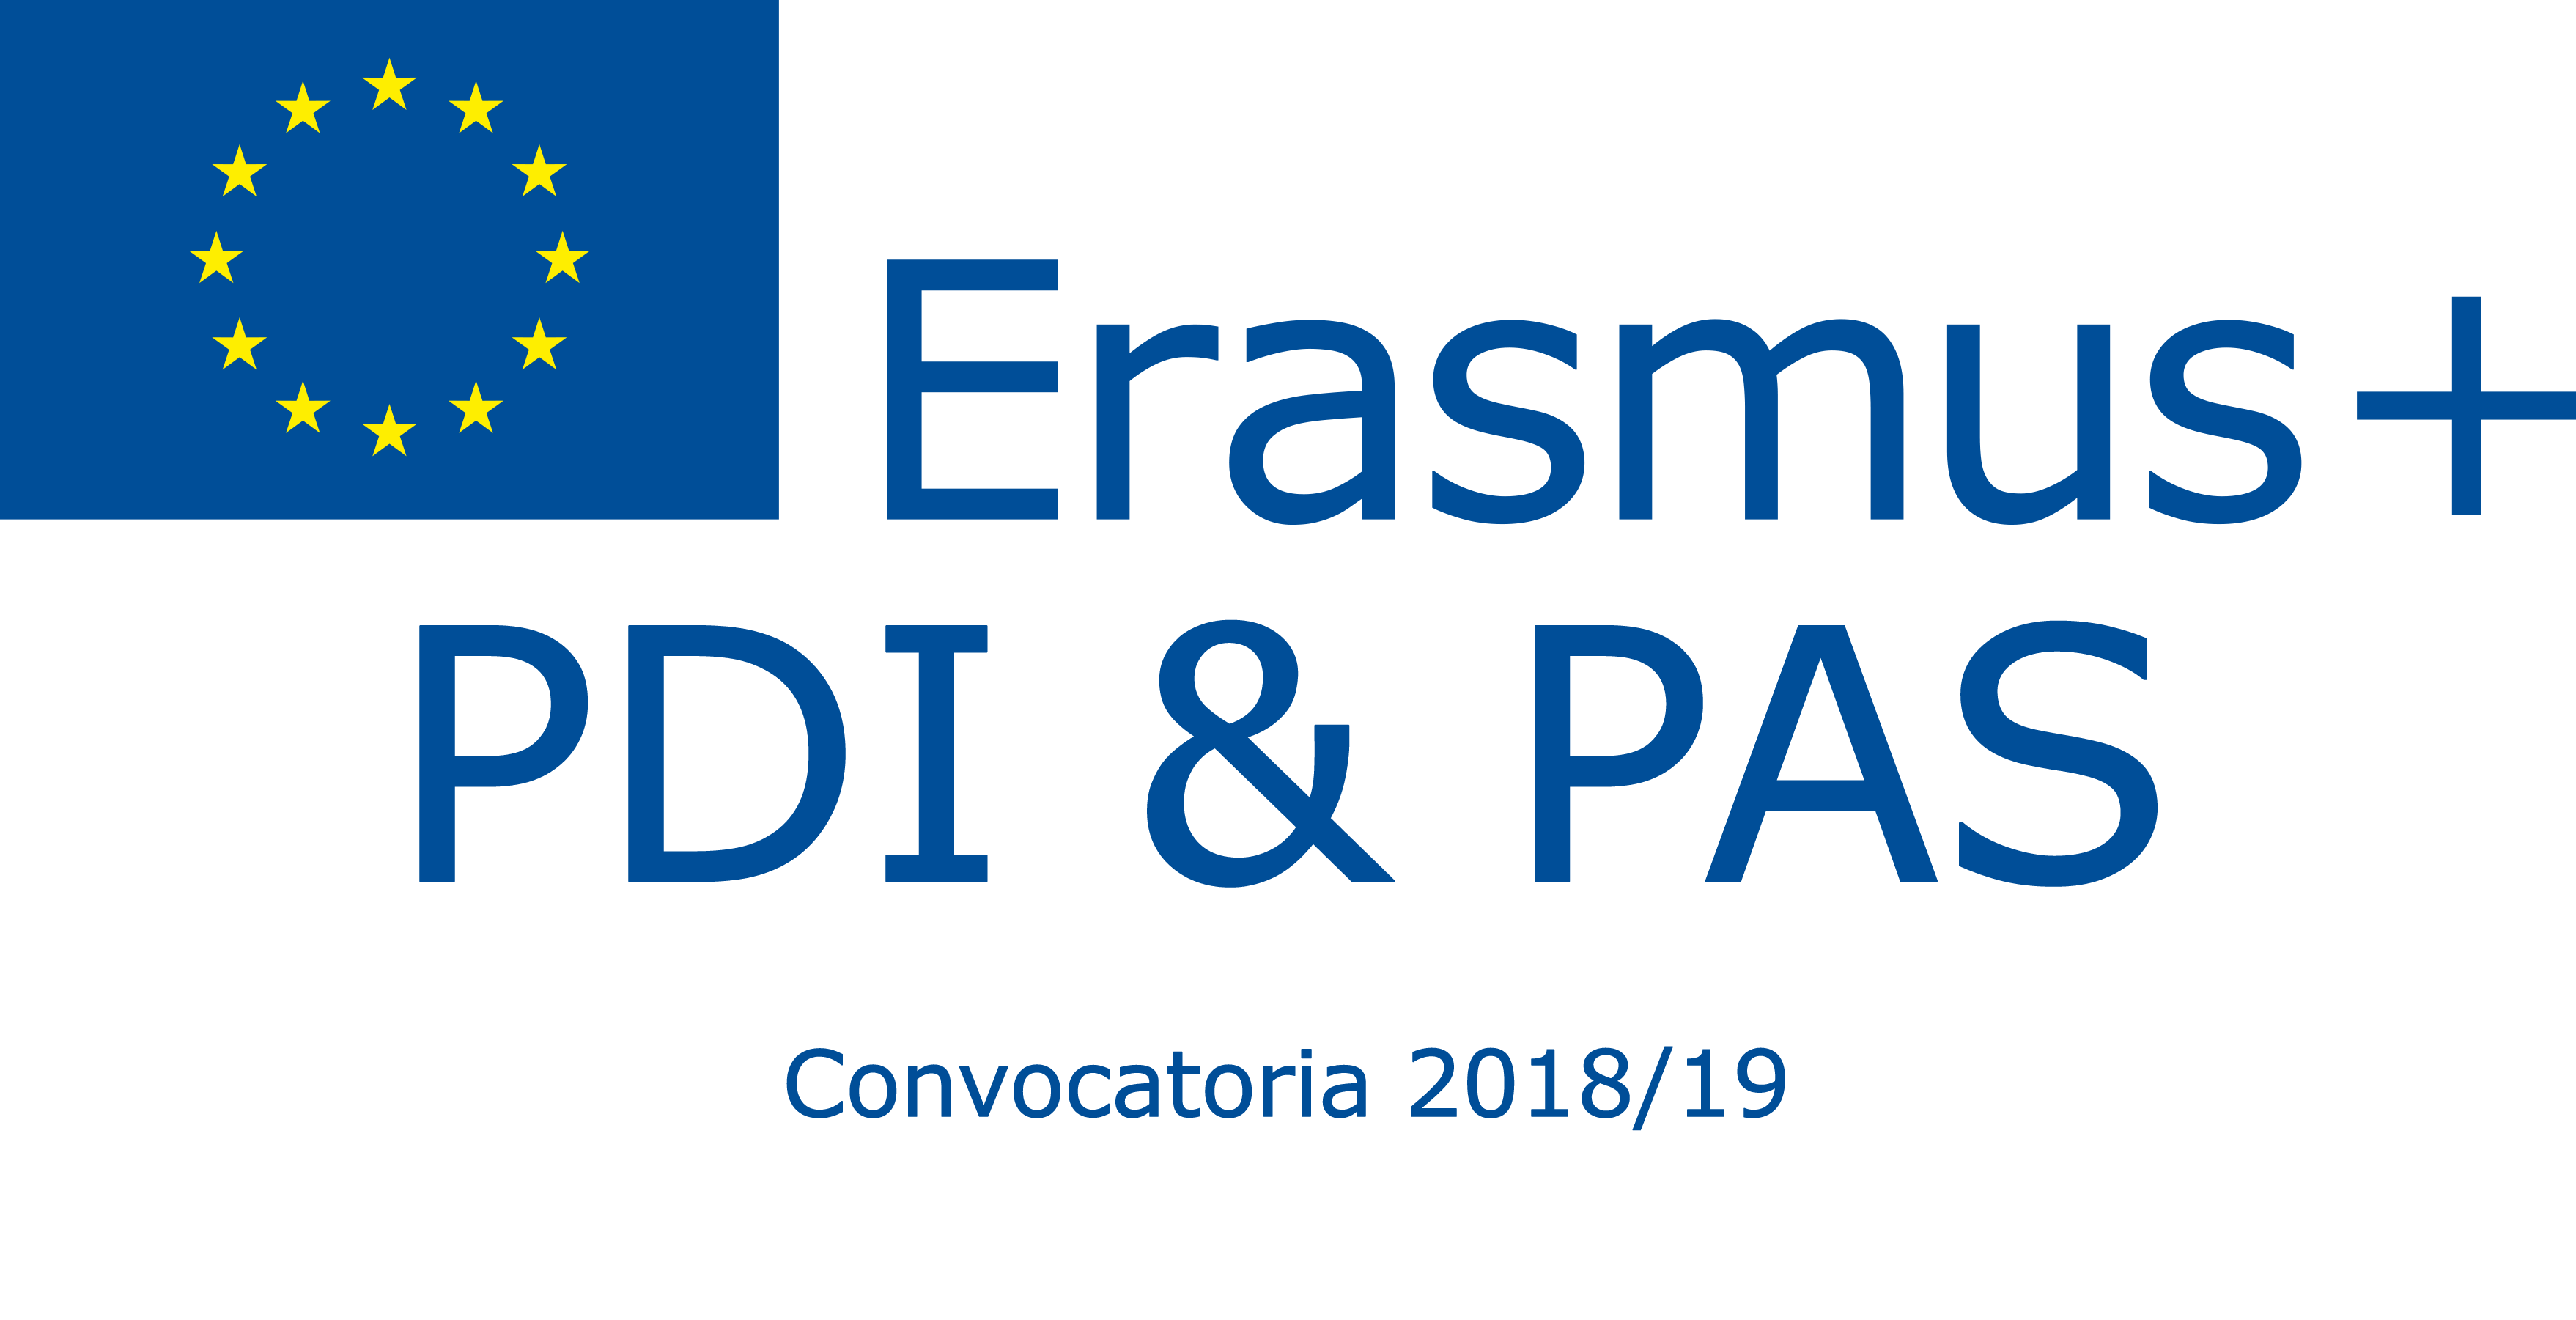 Abierto el plazo de solicitud de las convocatorias Erasmus+ para el PDI y el PAS del curso 2018/19